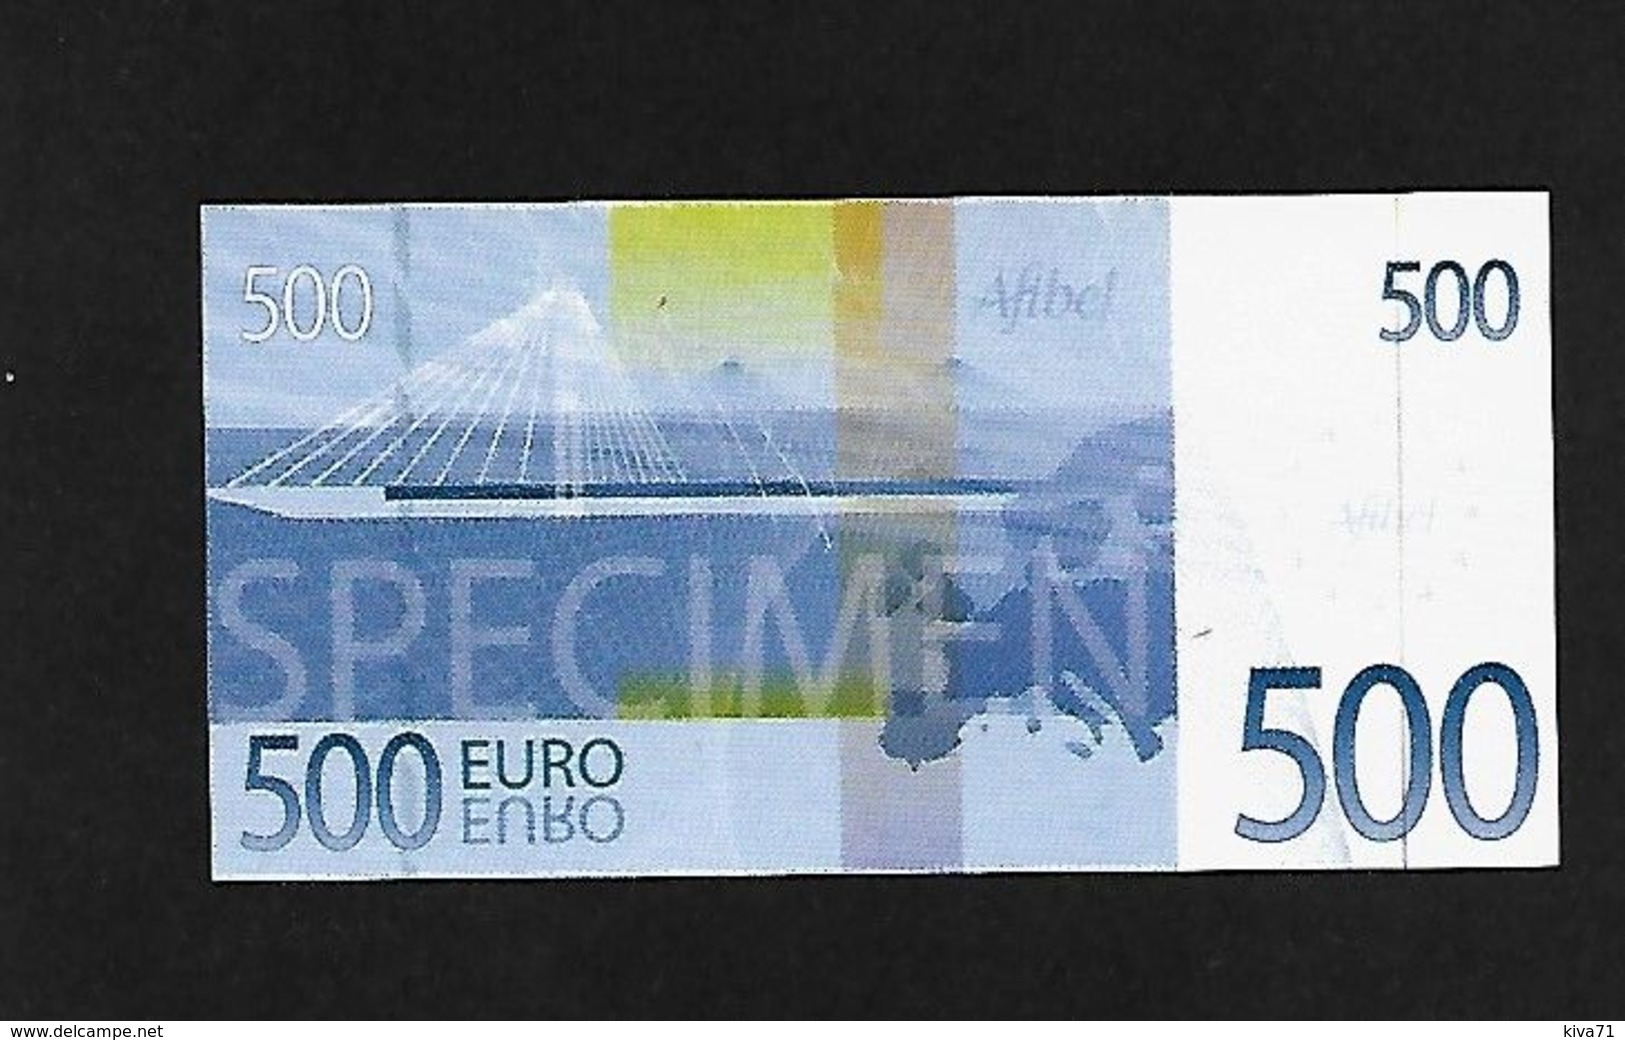 Billet Publicitaire Afibel 500 € Polymer - Specimen